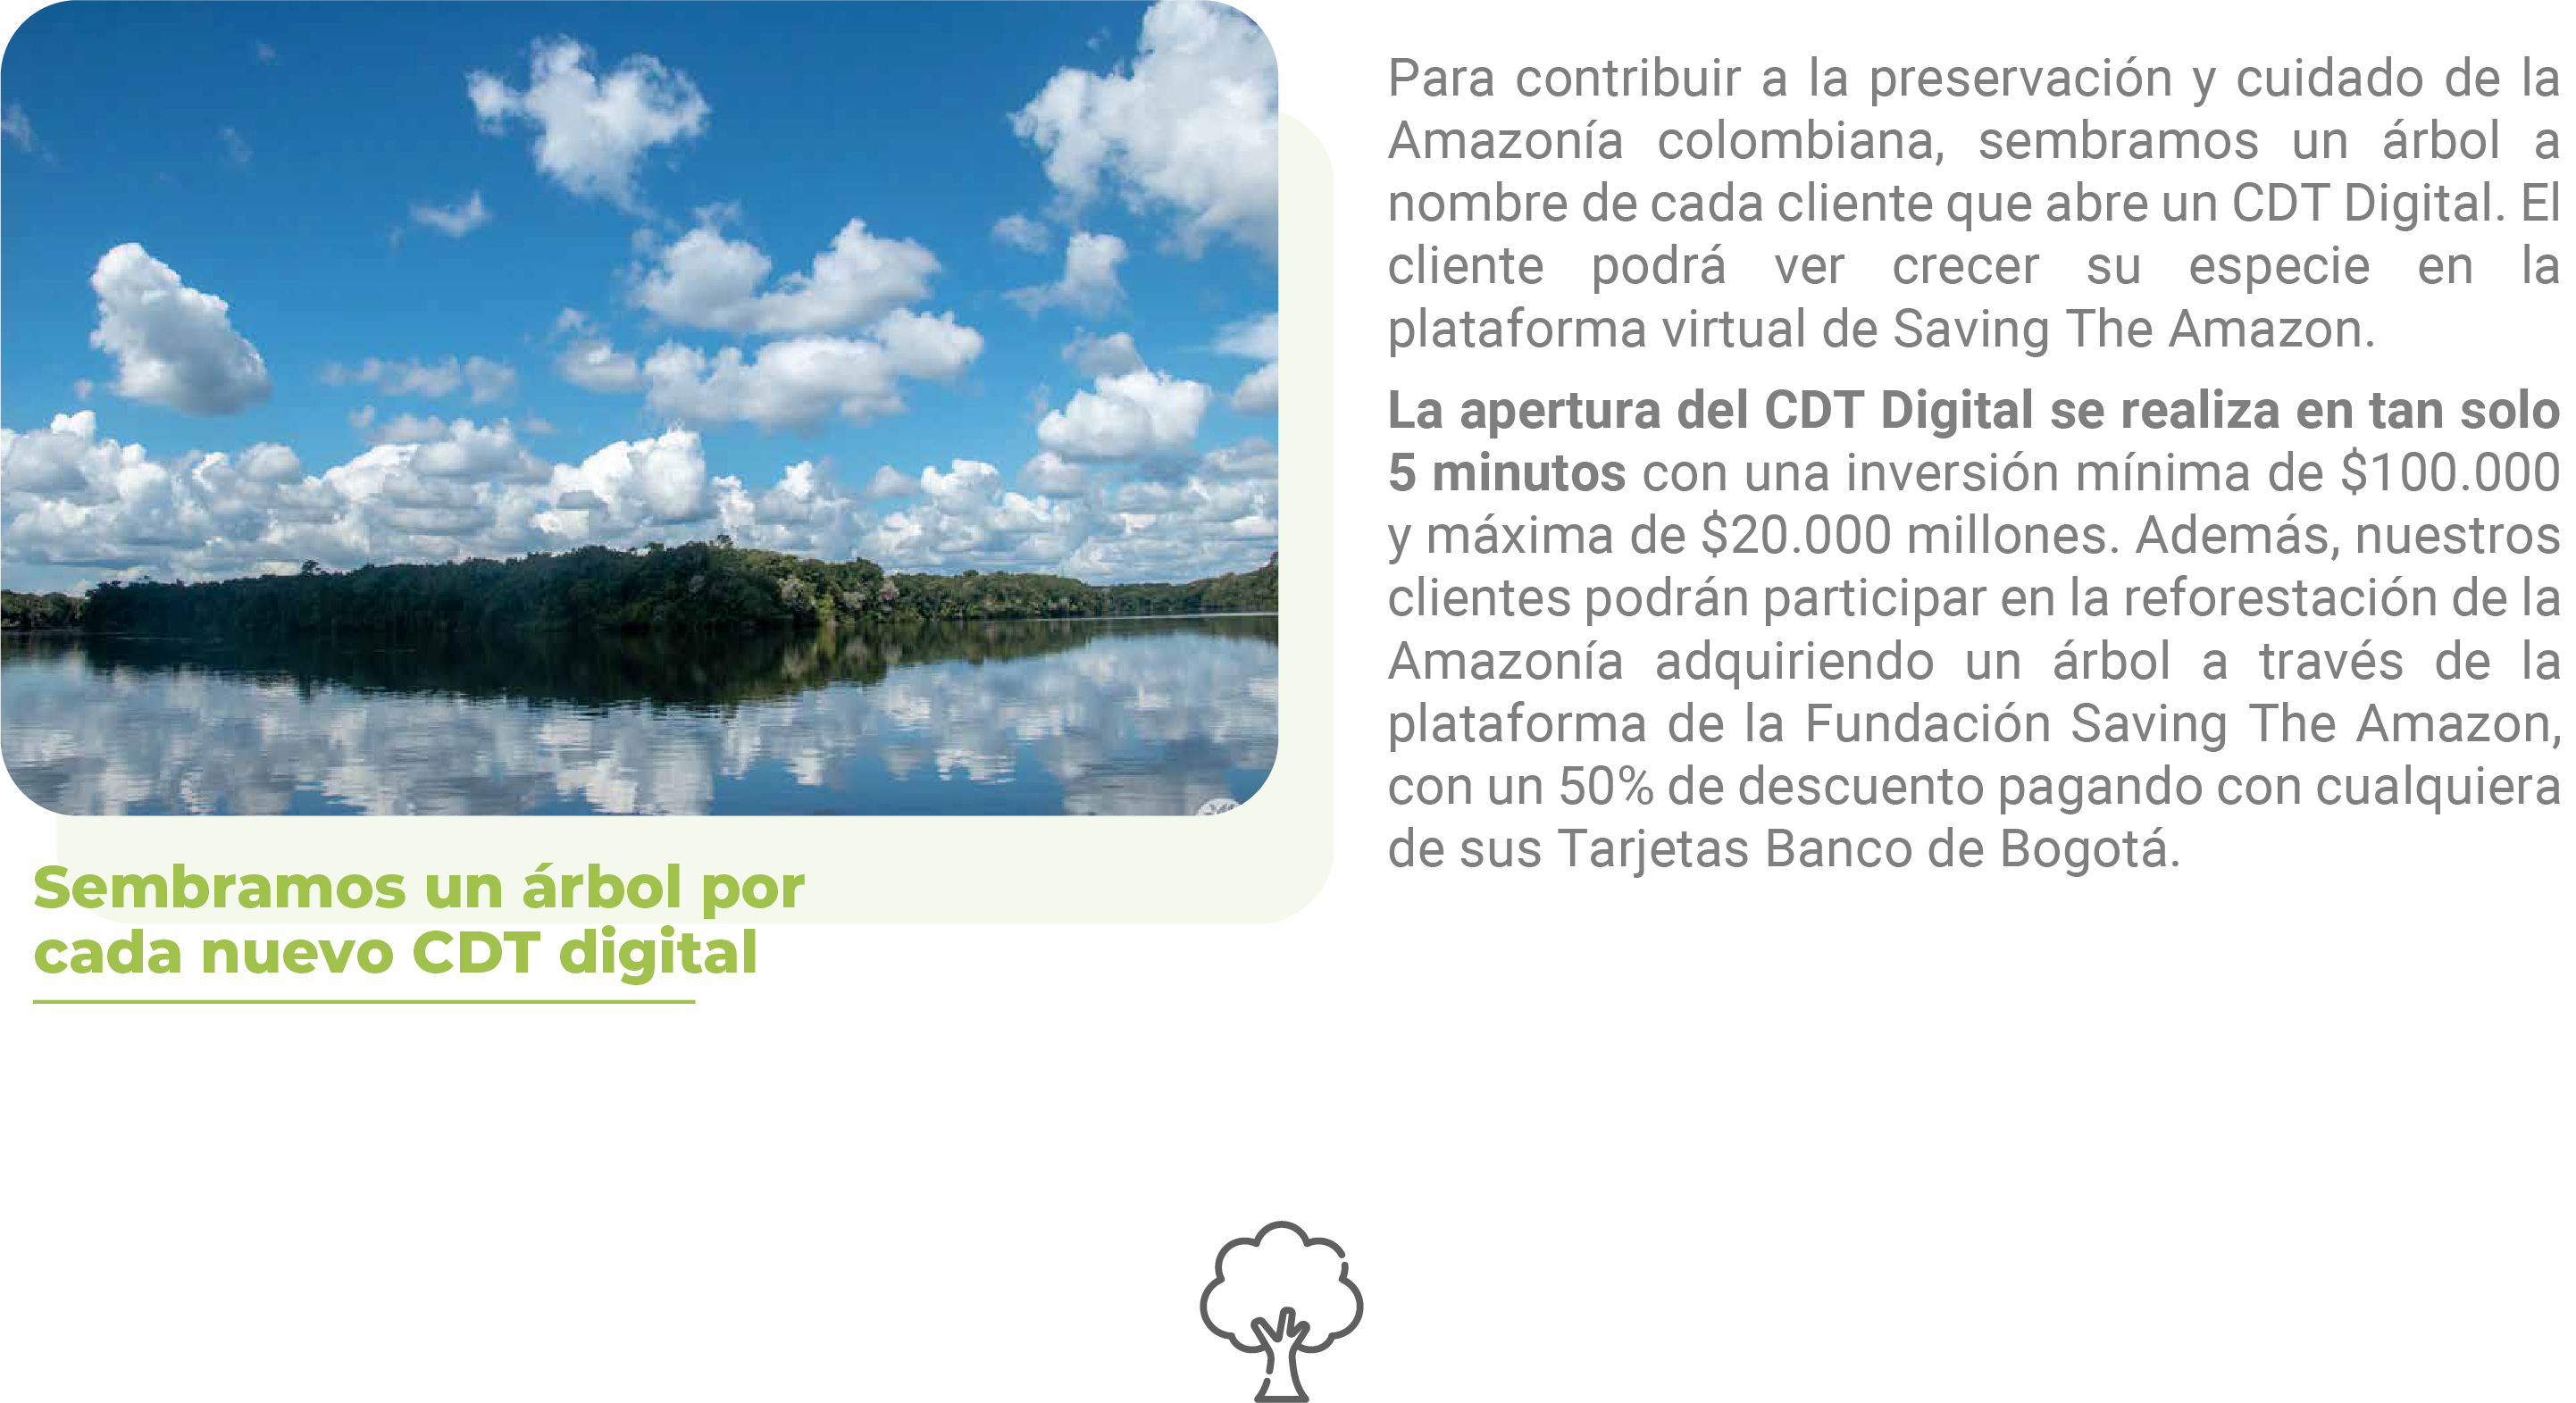 Para contribuir a la preservación y cuidado de la Amazonía colombiana, sembramos un árbol a nombre de cada cliente que abre un CDT Digital. El cliente podrá ver crecer su especie en la plataforma virtual de Saving The Amazon. La apertura del CDT Digital se realiza en tan solo 5 minutos con una inversión mínima de $100.000 y máxima de $20.000 millones. Además, nuestros clientes podrán participar en la reforestación de la Amazonía adquiriendo un árbol a través de la plataforma de la Fundación Saving The Amazon, con un 50% de descuento pagando con cualquiera de sus Tarjetas Banco de Bogotá.